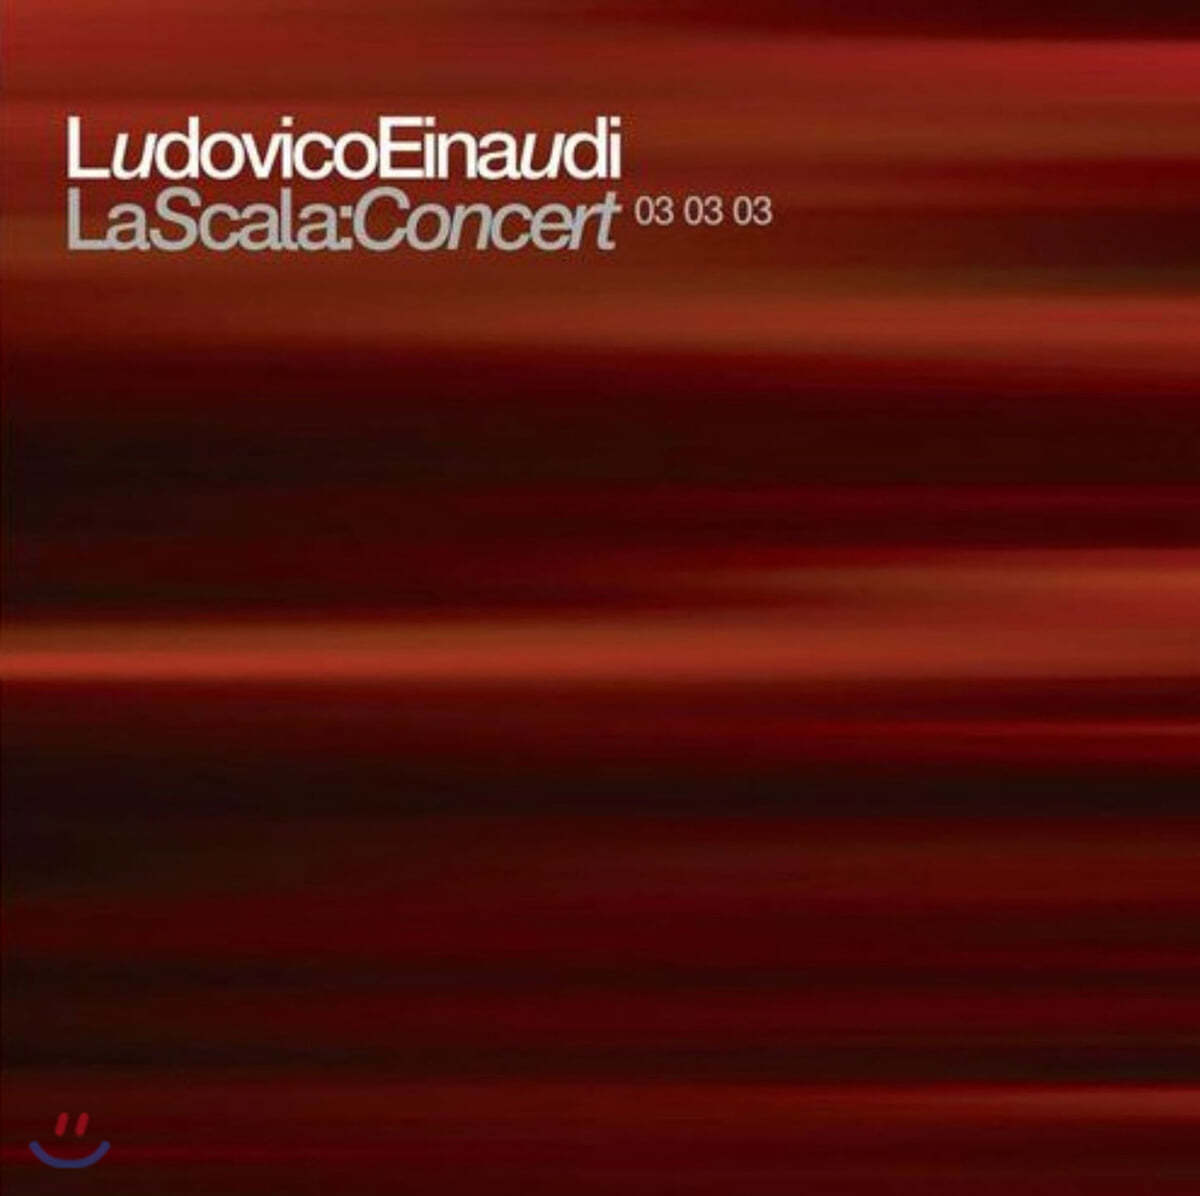 Ludovico Einaudi (루도비코 에이나우디) - La Scala: Concert 03 03 03 